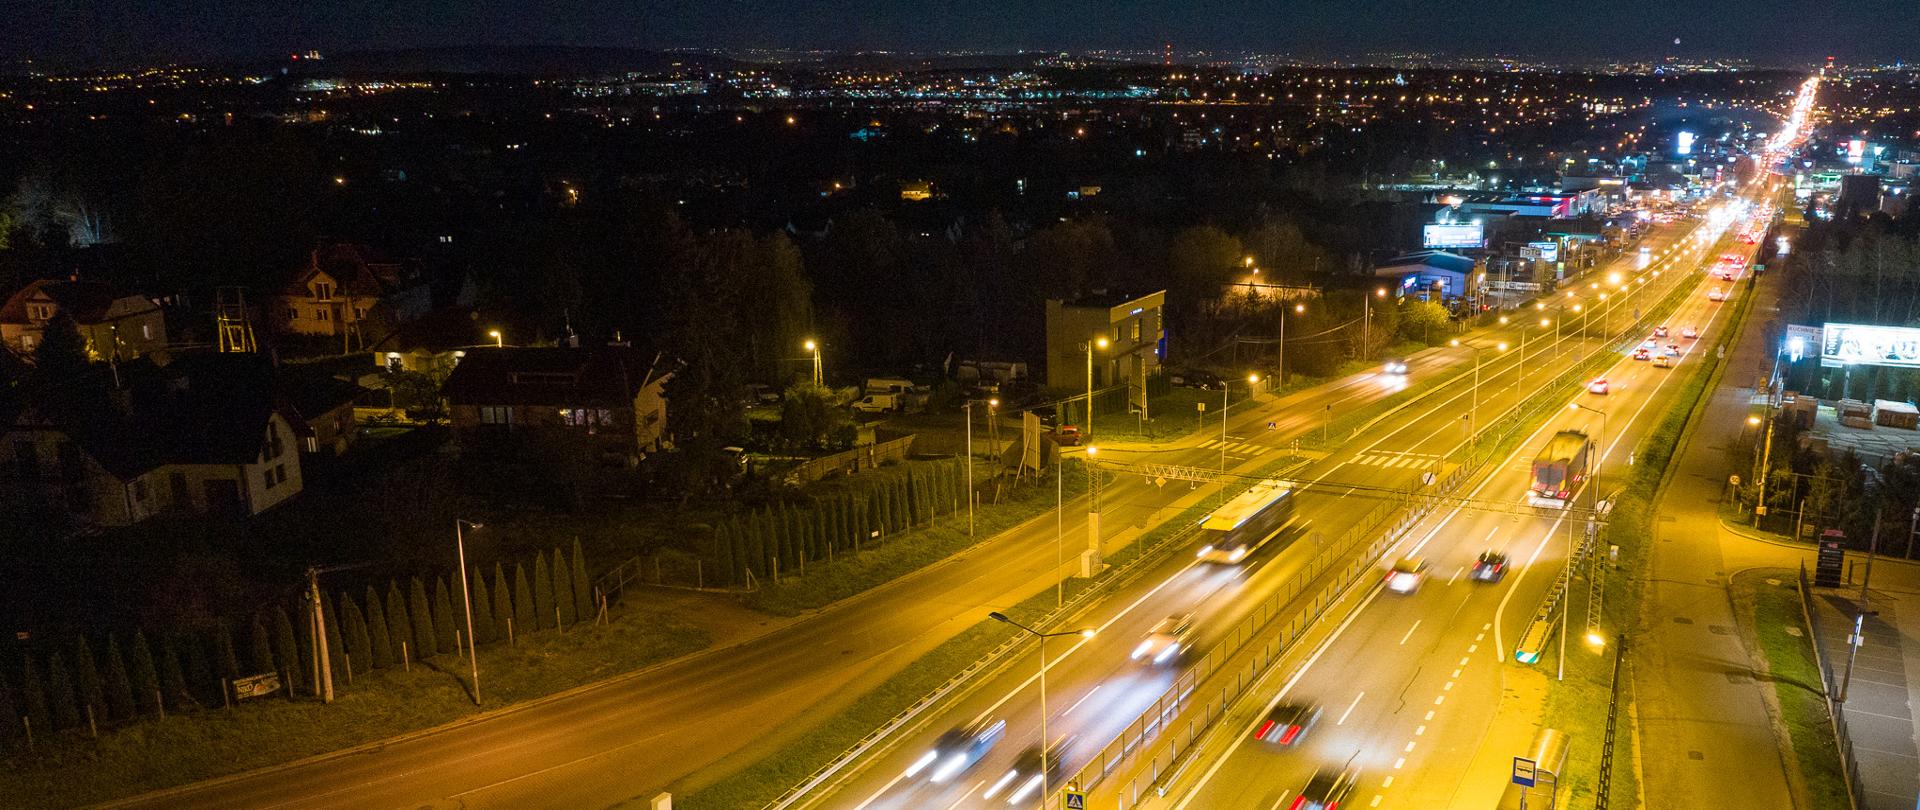 Zdjęcie przedstawia drogę krajową nocą. Droga ma po dwa pasy ruchu w obie strony. Jest dobrze oświetlona. Poruszają się po niej różnego rodzaju pojazdy - samochody osobowe, autobusy. W tle widoczna nocna panorama miasta z licznymi światłami.